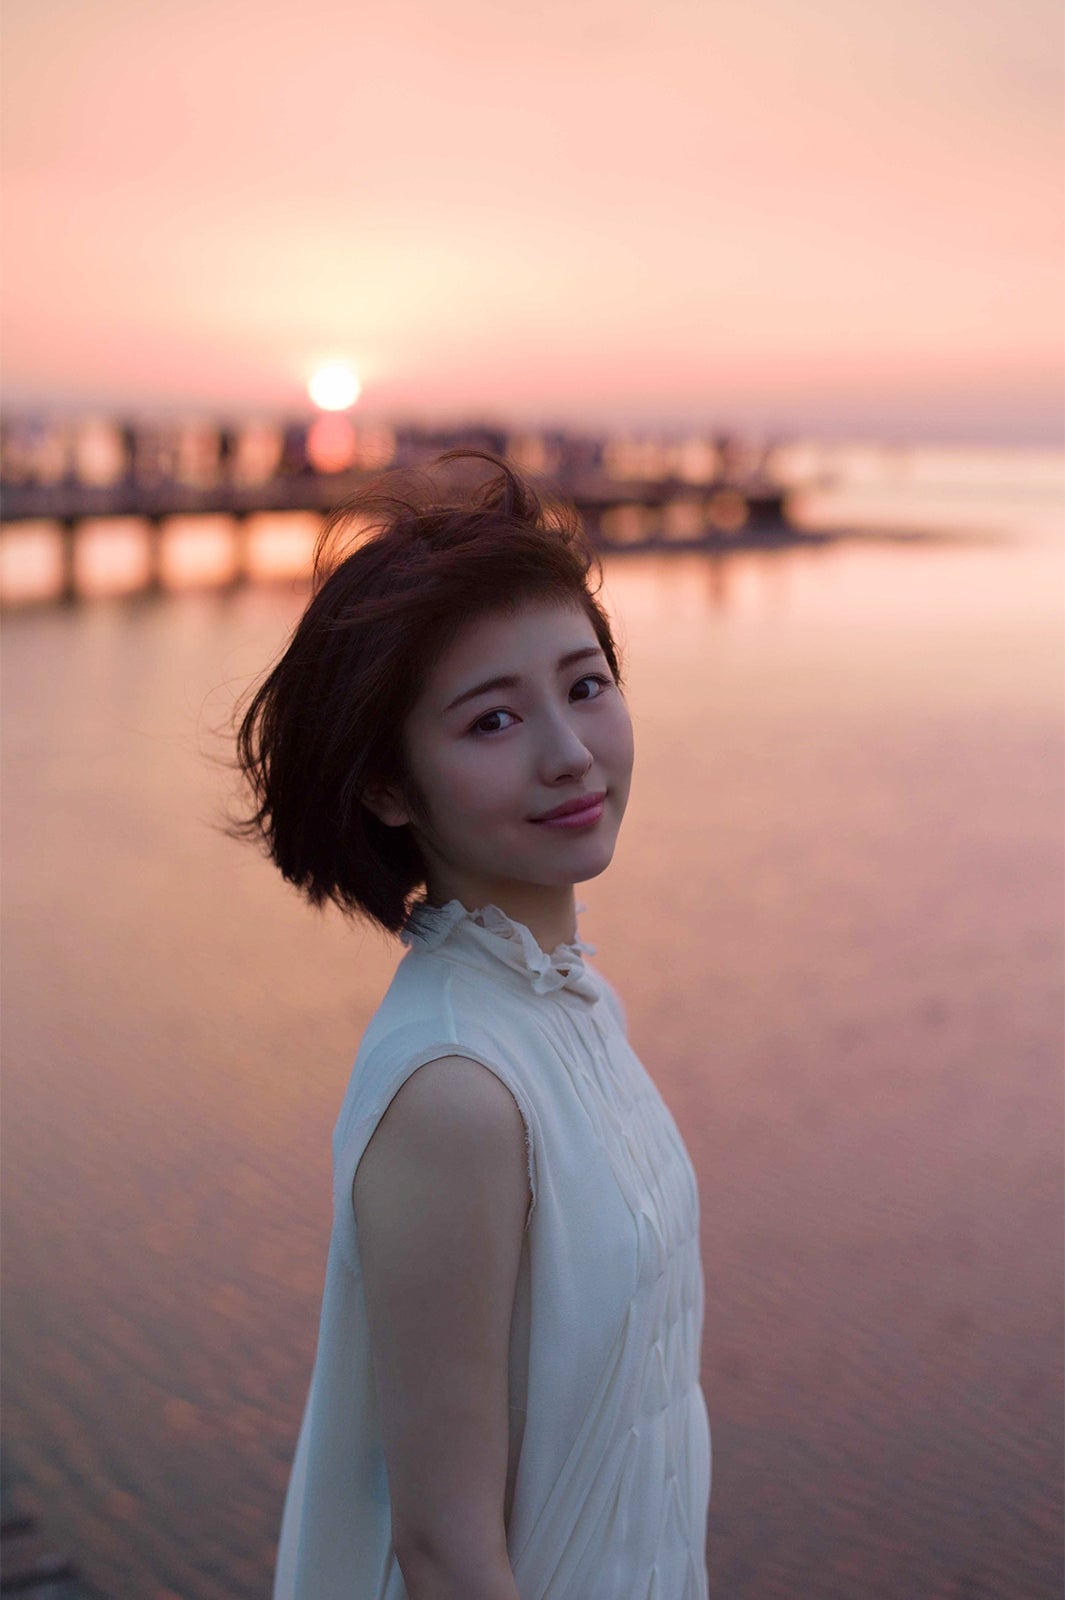 浜辺美波、初めての海外旅行へ 無垢で自然な表情切り取った写真集 - モデルプレス